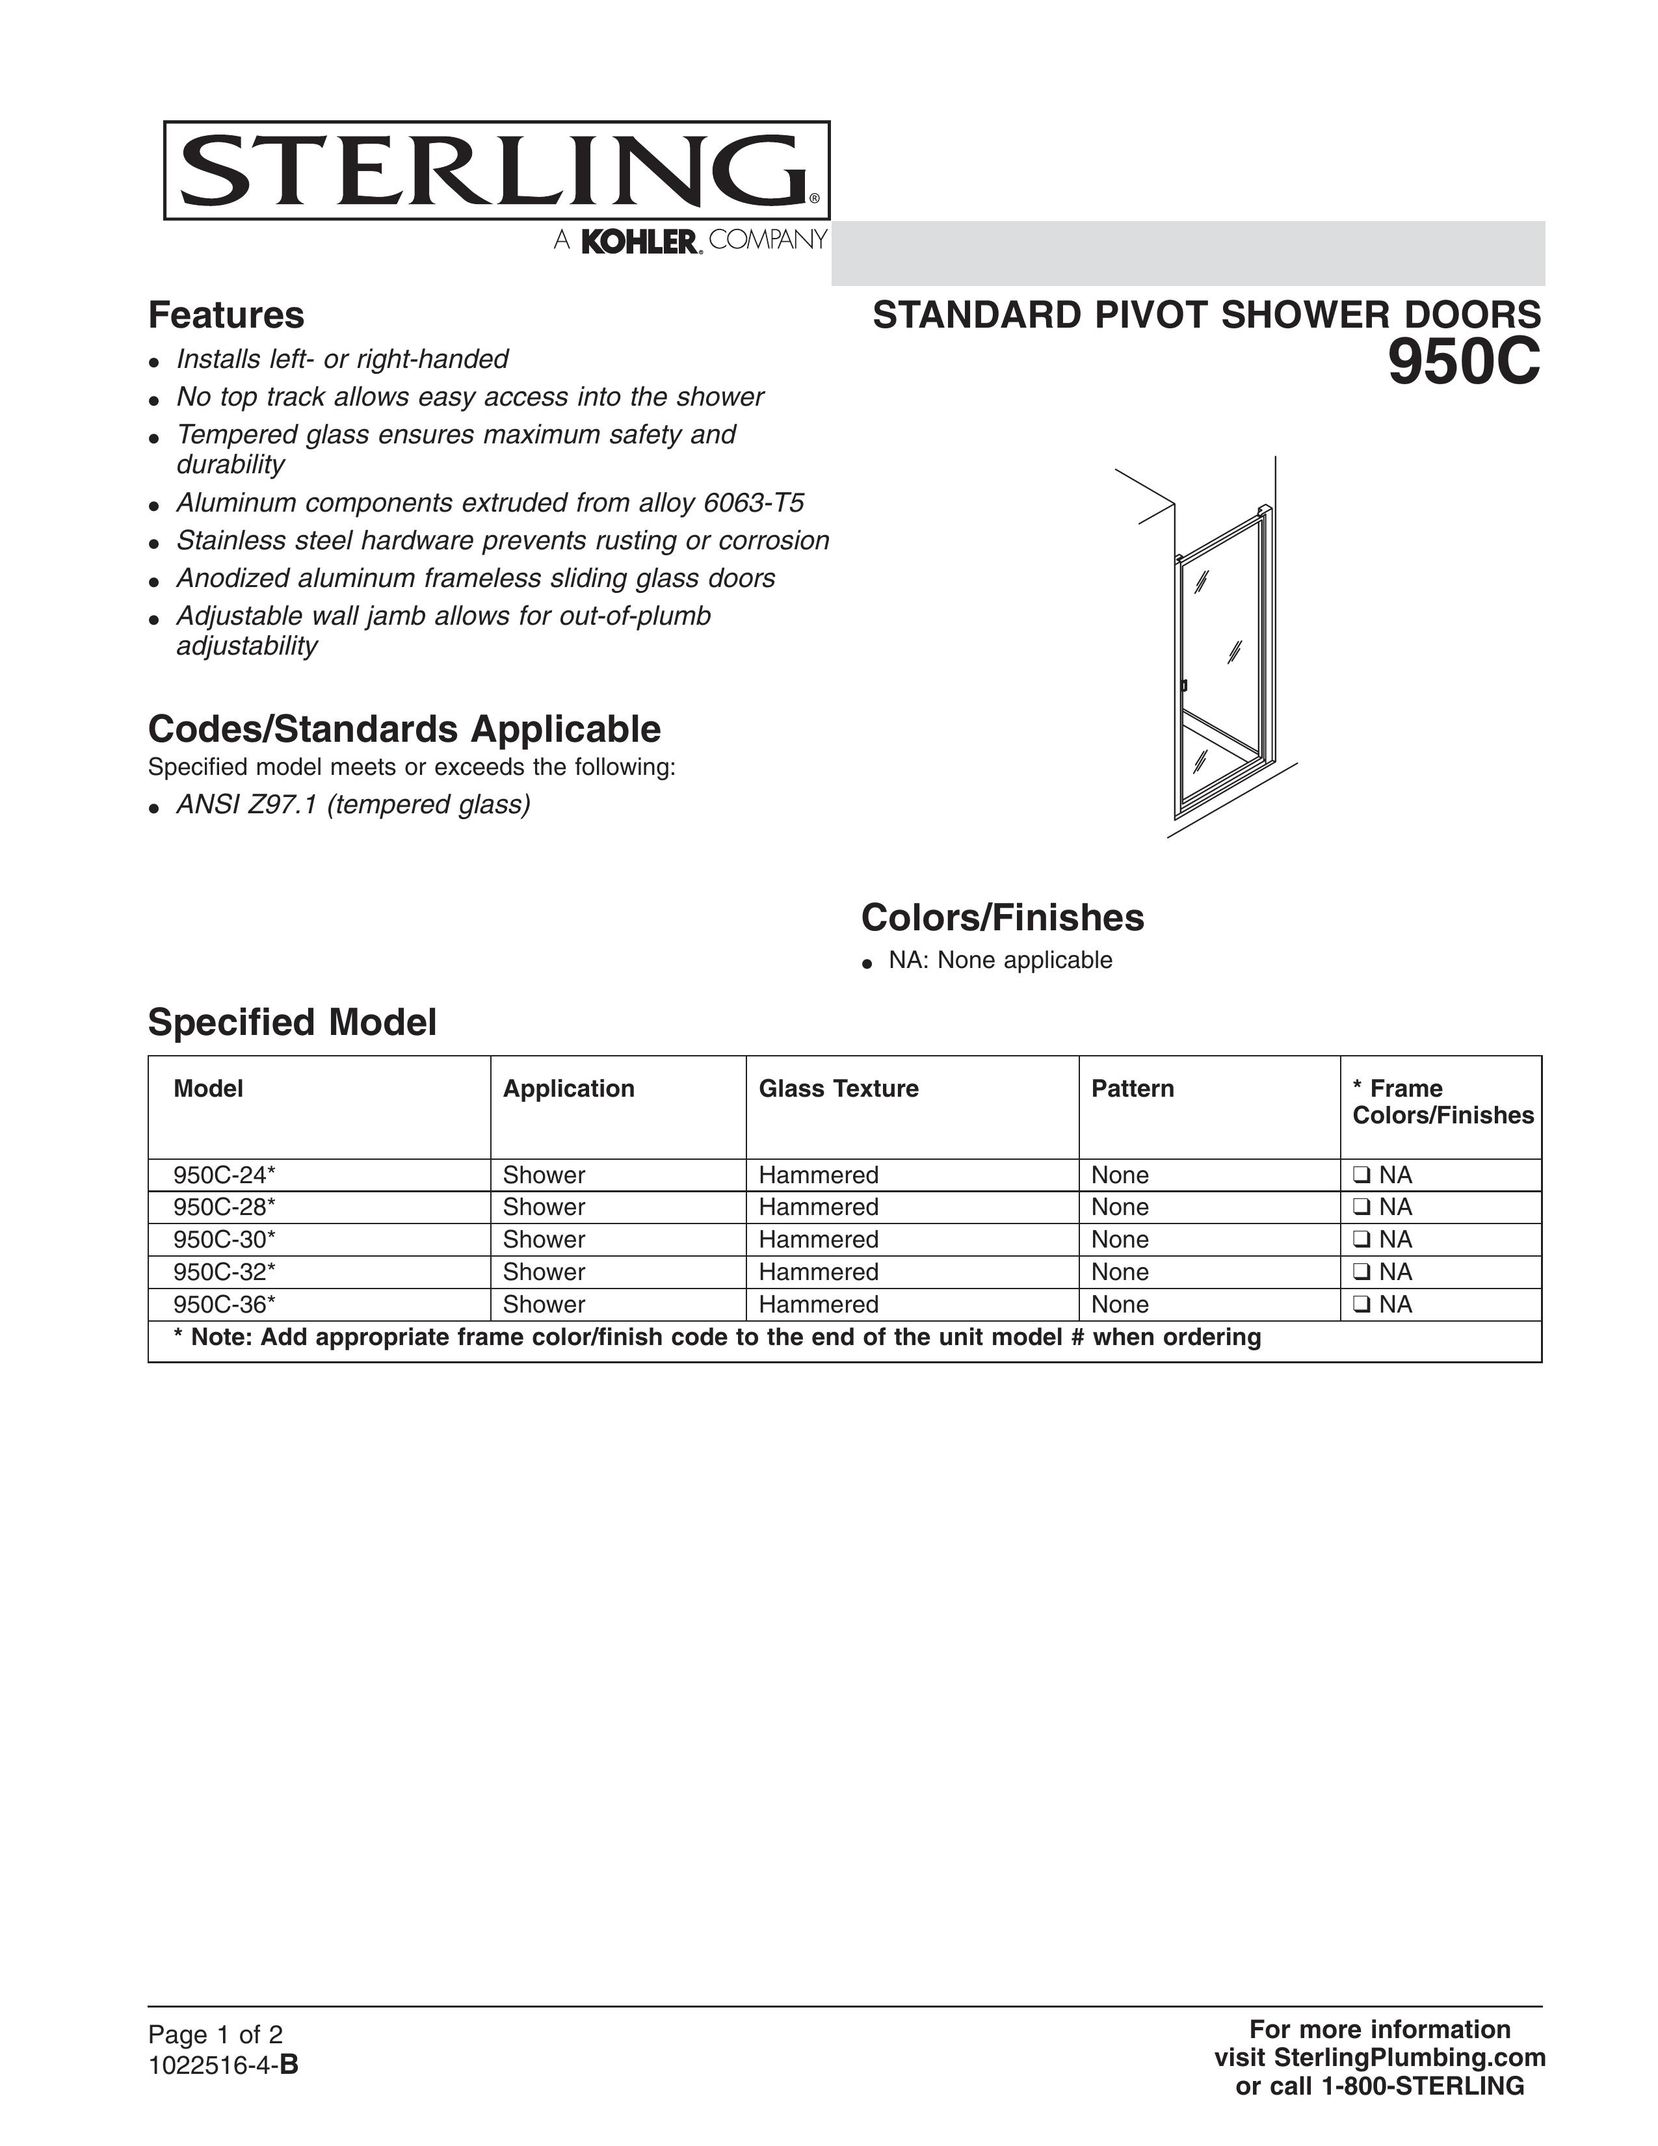 Sterling Plumbing 950C-24* Door User Manual